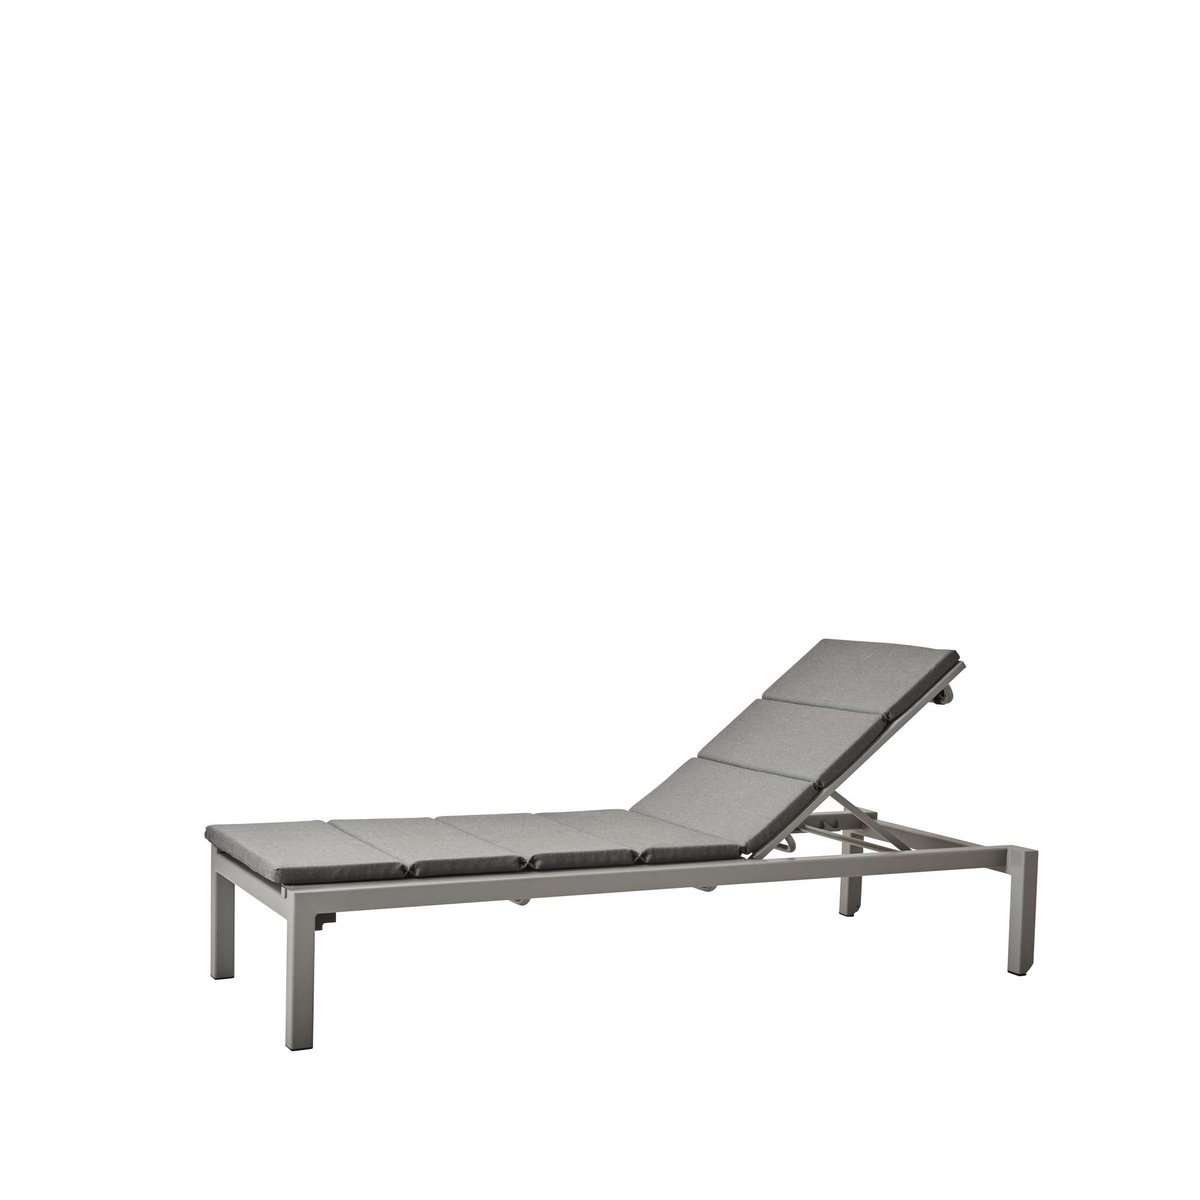 Cane-line Relax ligstoel Sunbrella Natté light grey, incl. grijs kussen